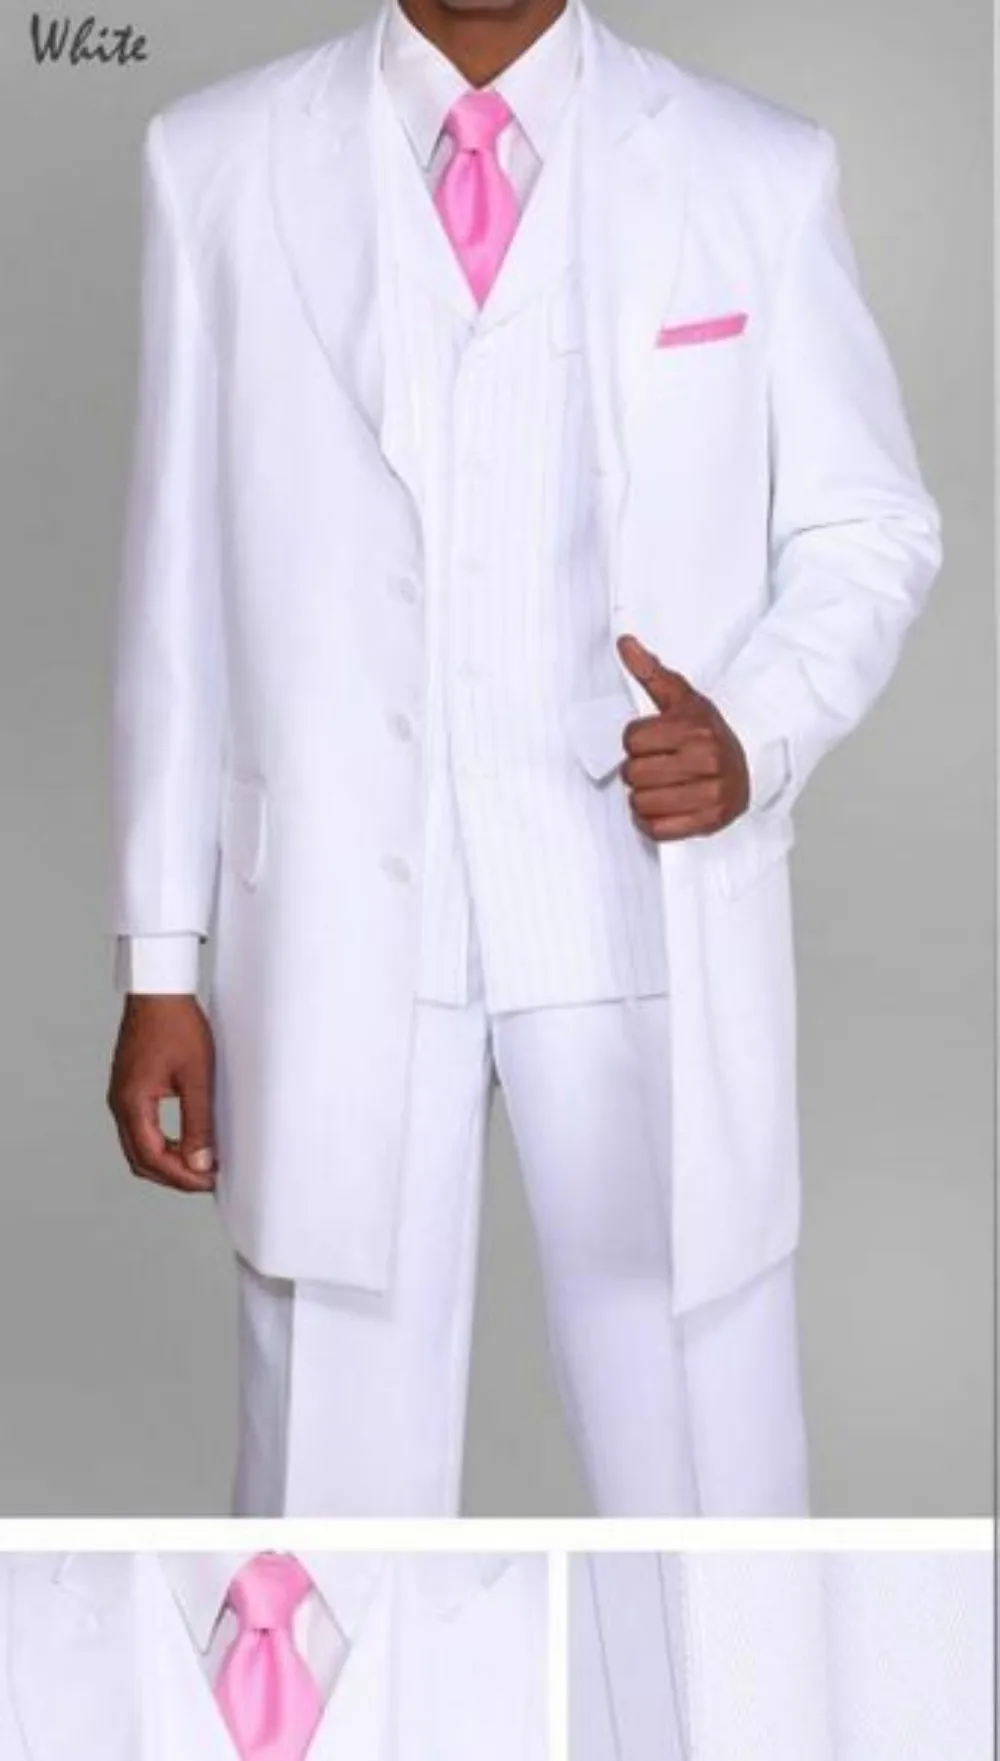 3 предмета мужских костюмов и блейзеров TPSAADE, мужской костюм Zoot уникального дизайна с жилетом в тон, сшитый на заказ